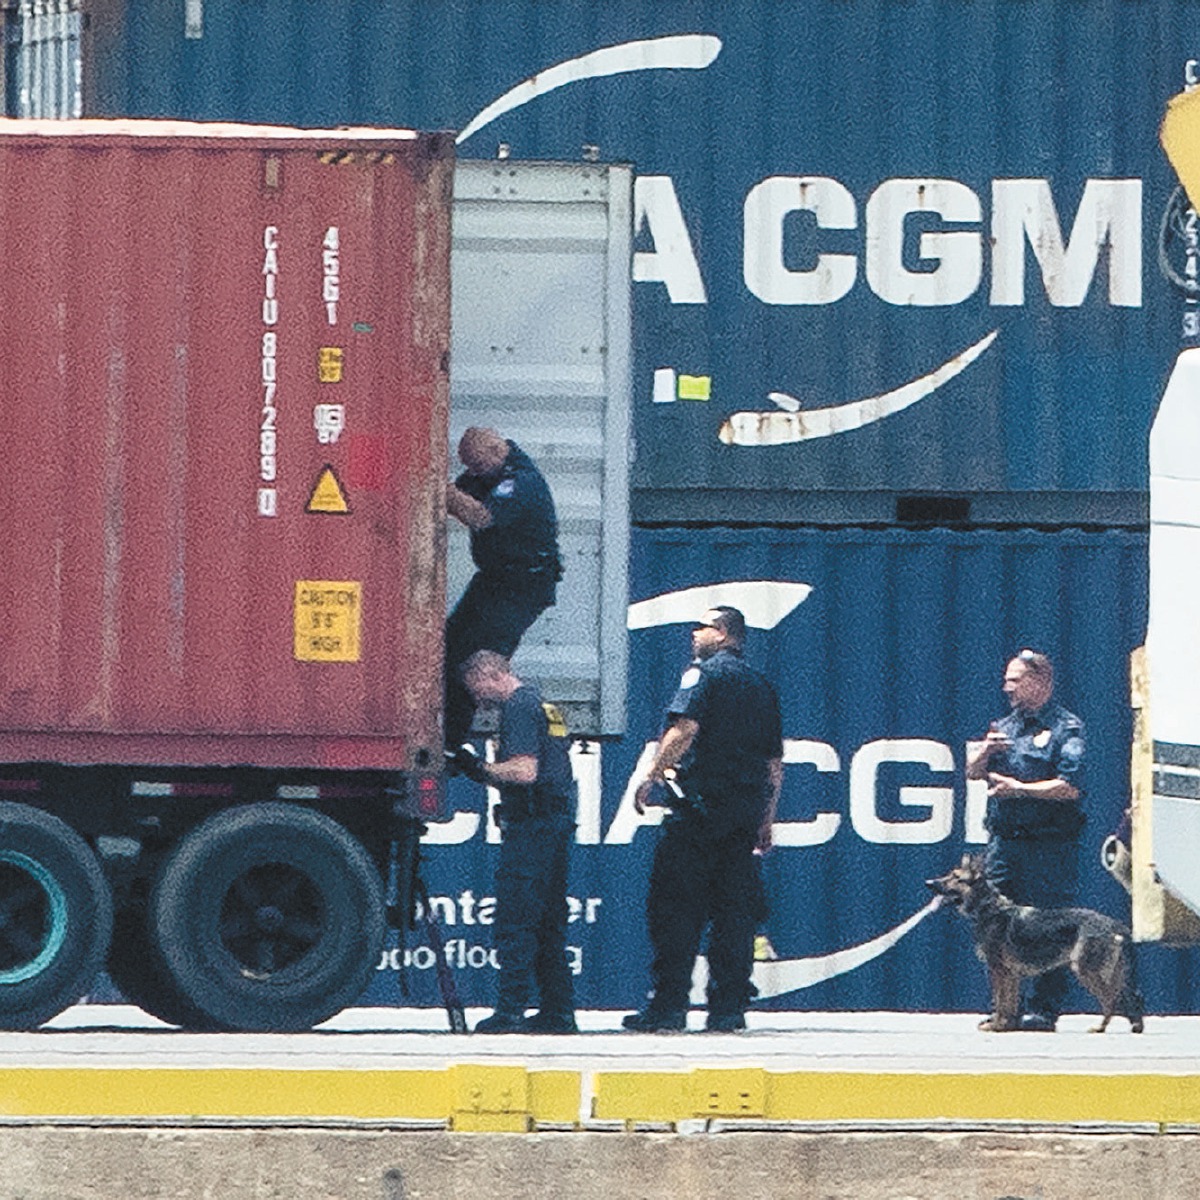 Decomisan 16.5 ton de cocaína en un barco en EU